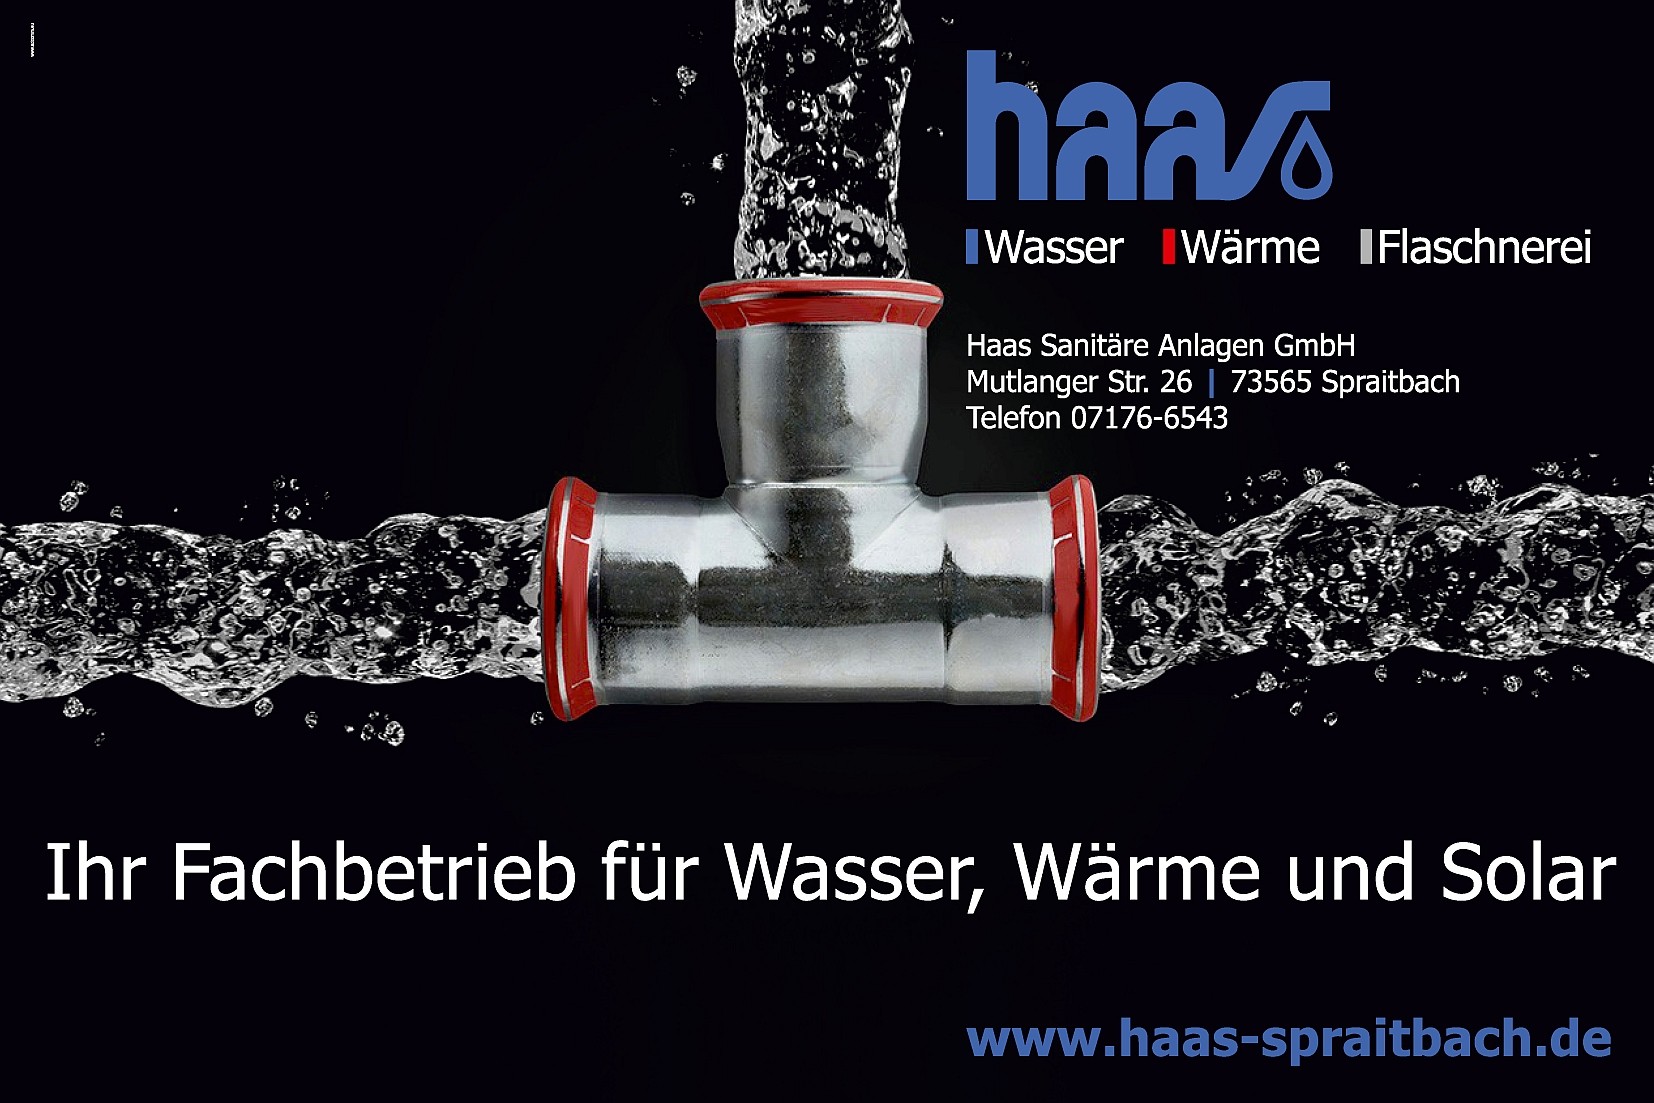 (c) Haas-spraitbach.de